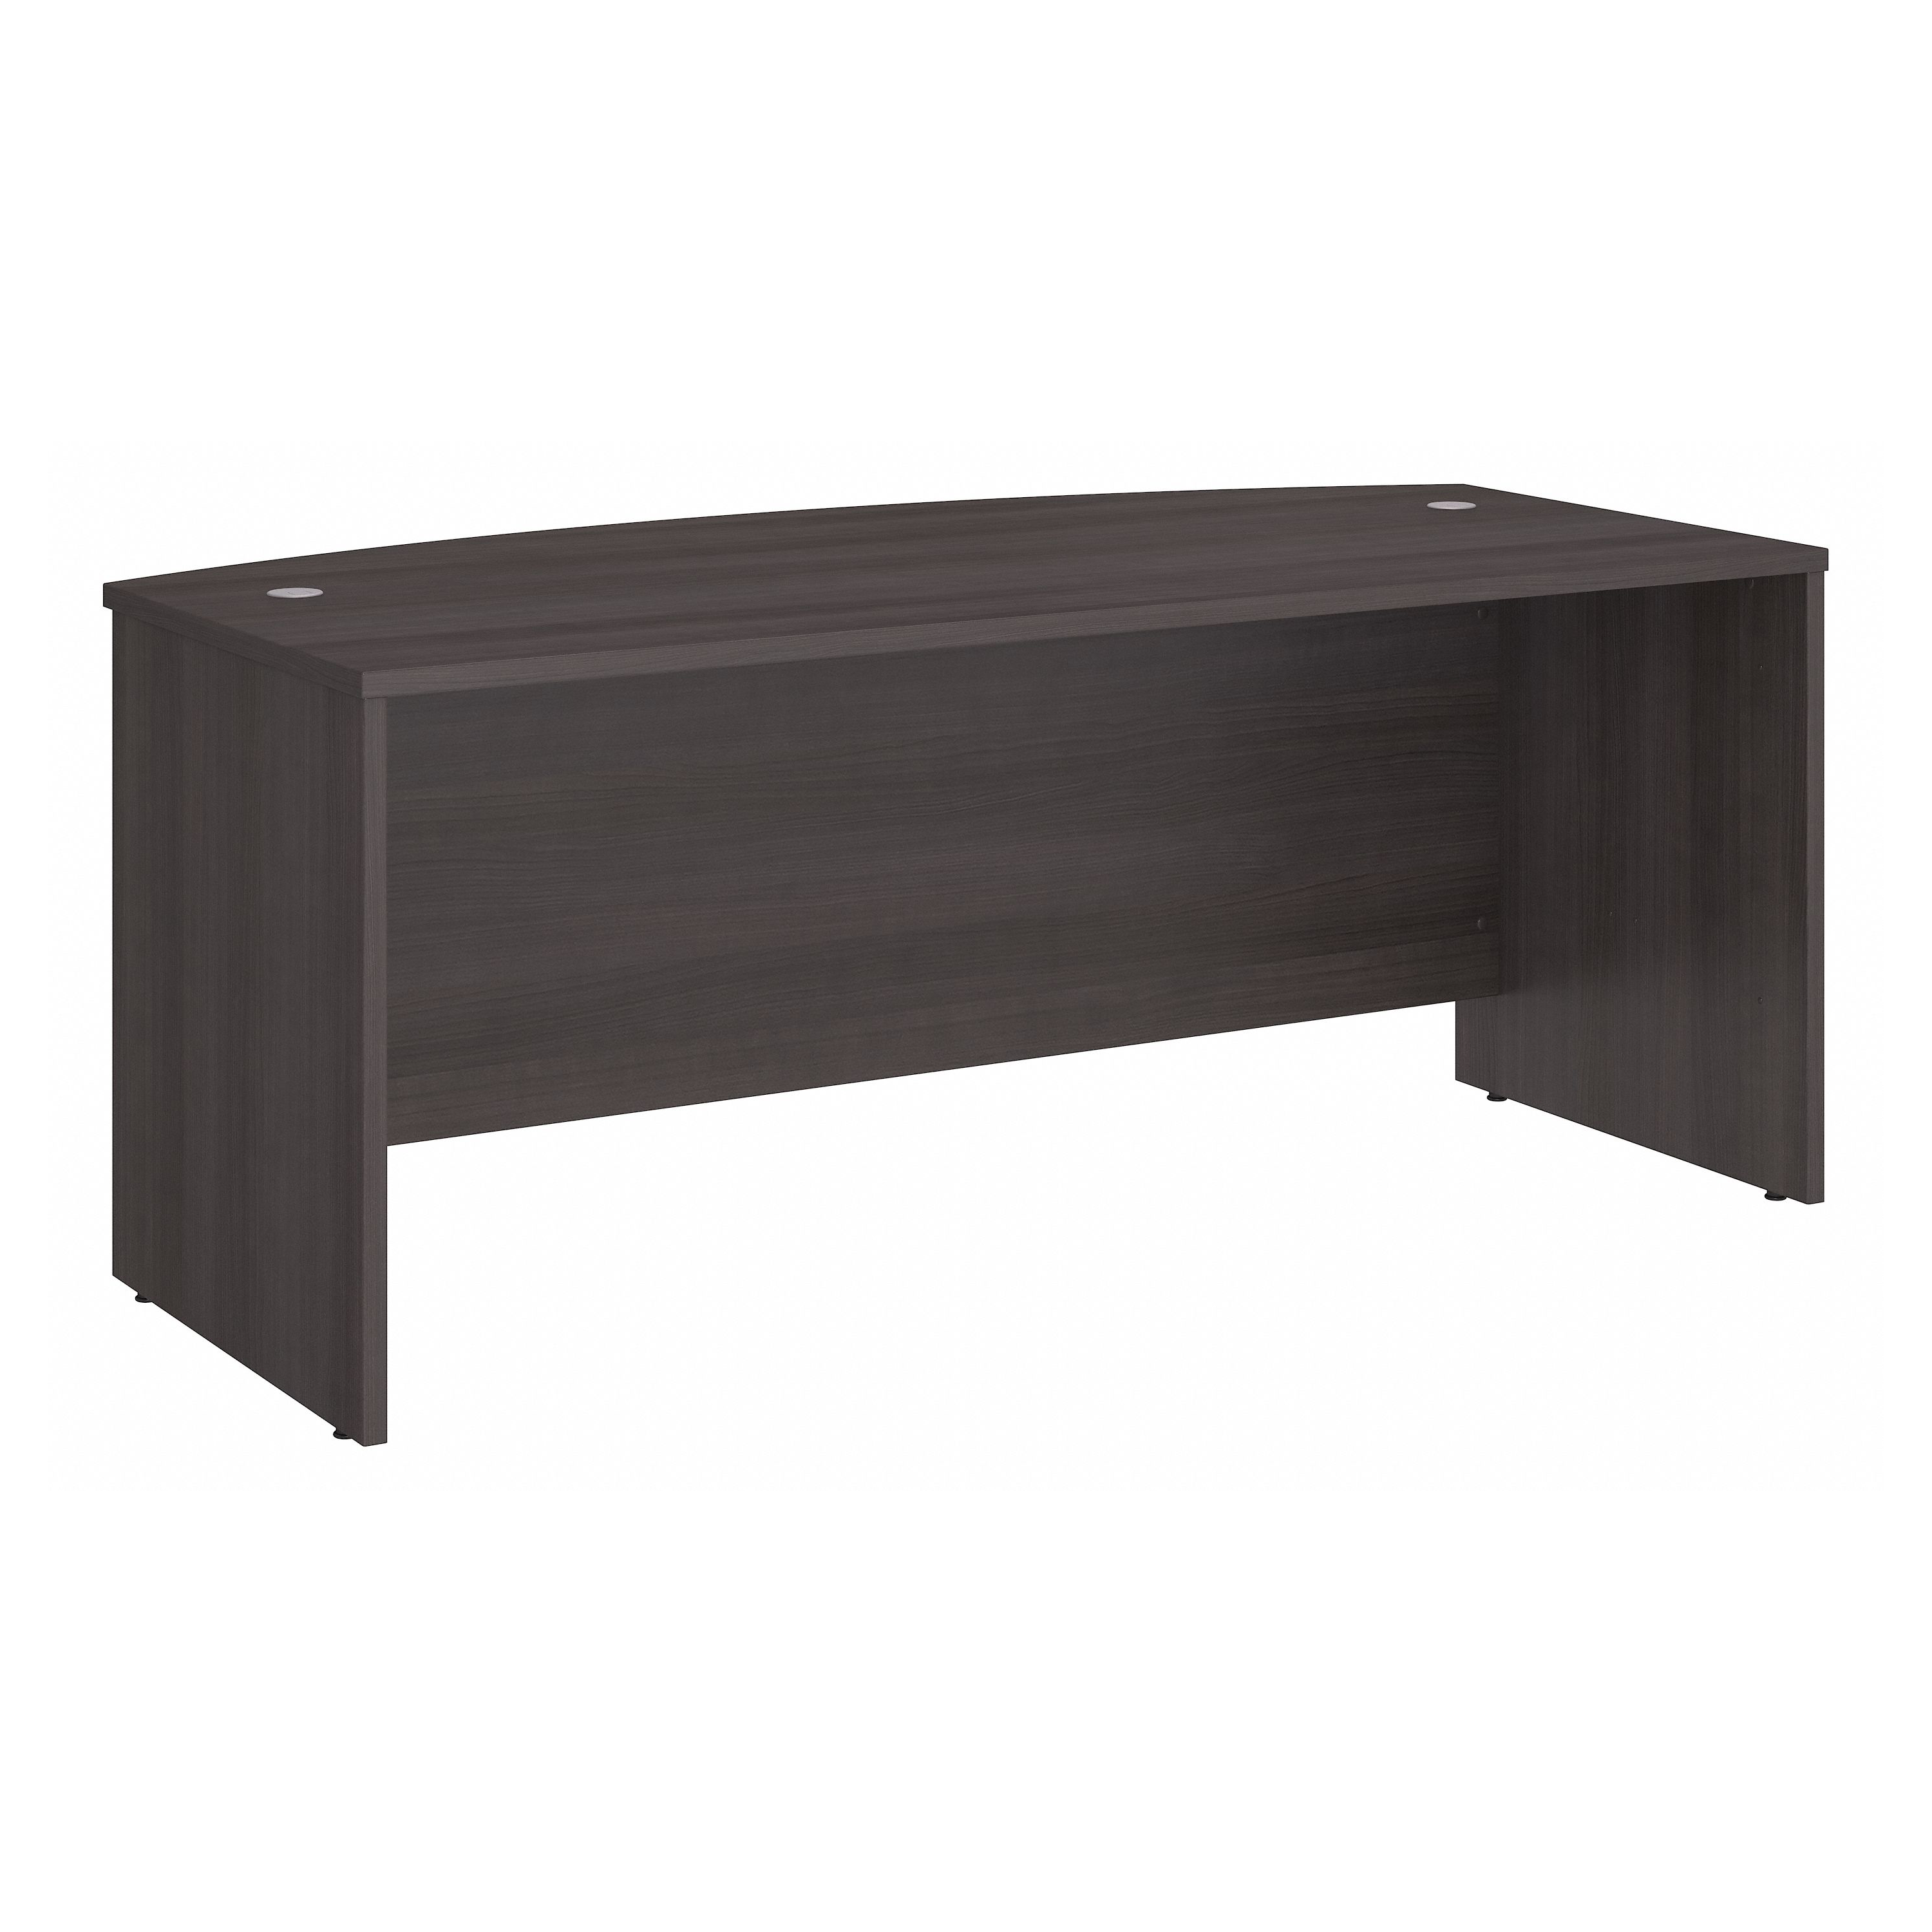 Shop Bush Business Furniture Studio C 72W x 36D Bow Front Desk 02 SCD172SG #color_storm gray